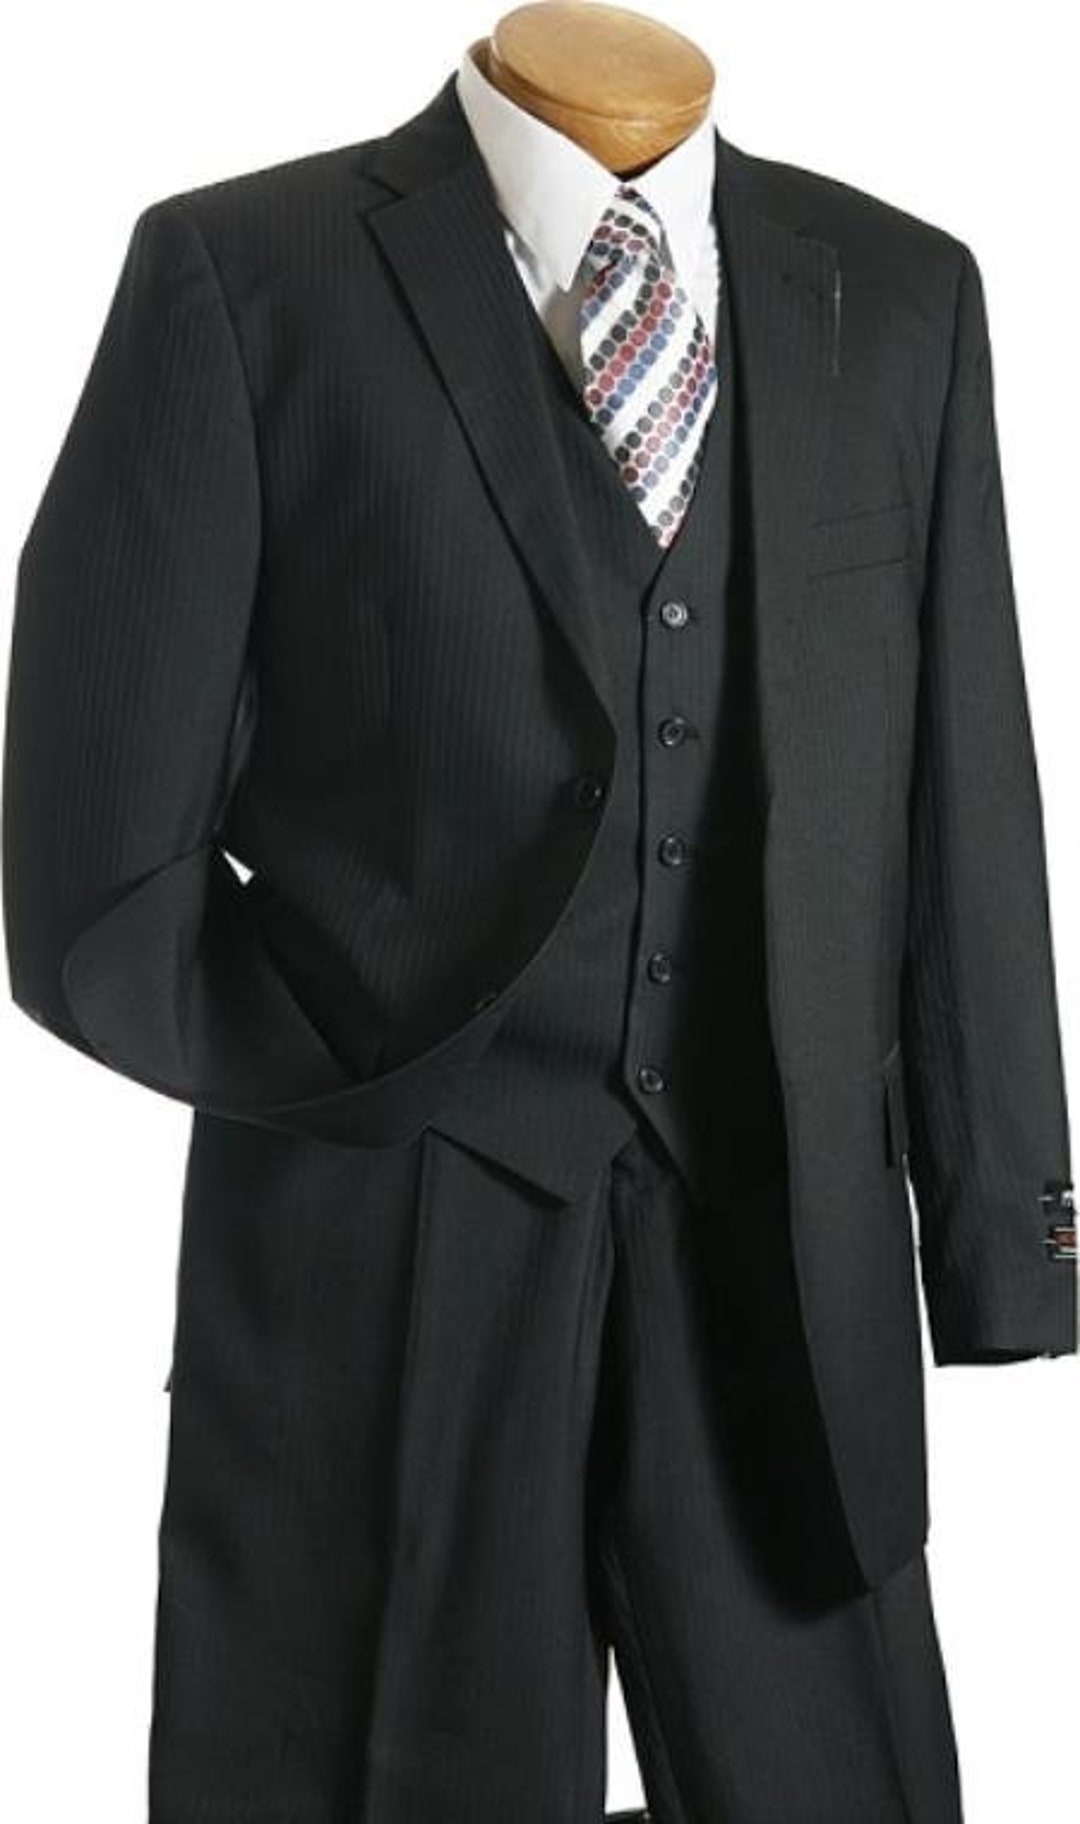 3 Pc Vested Black Stripe Pinstripe Designer Affordable Suit - Etsy